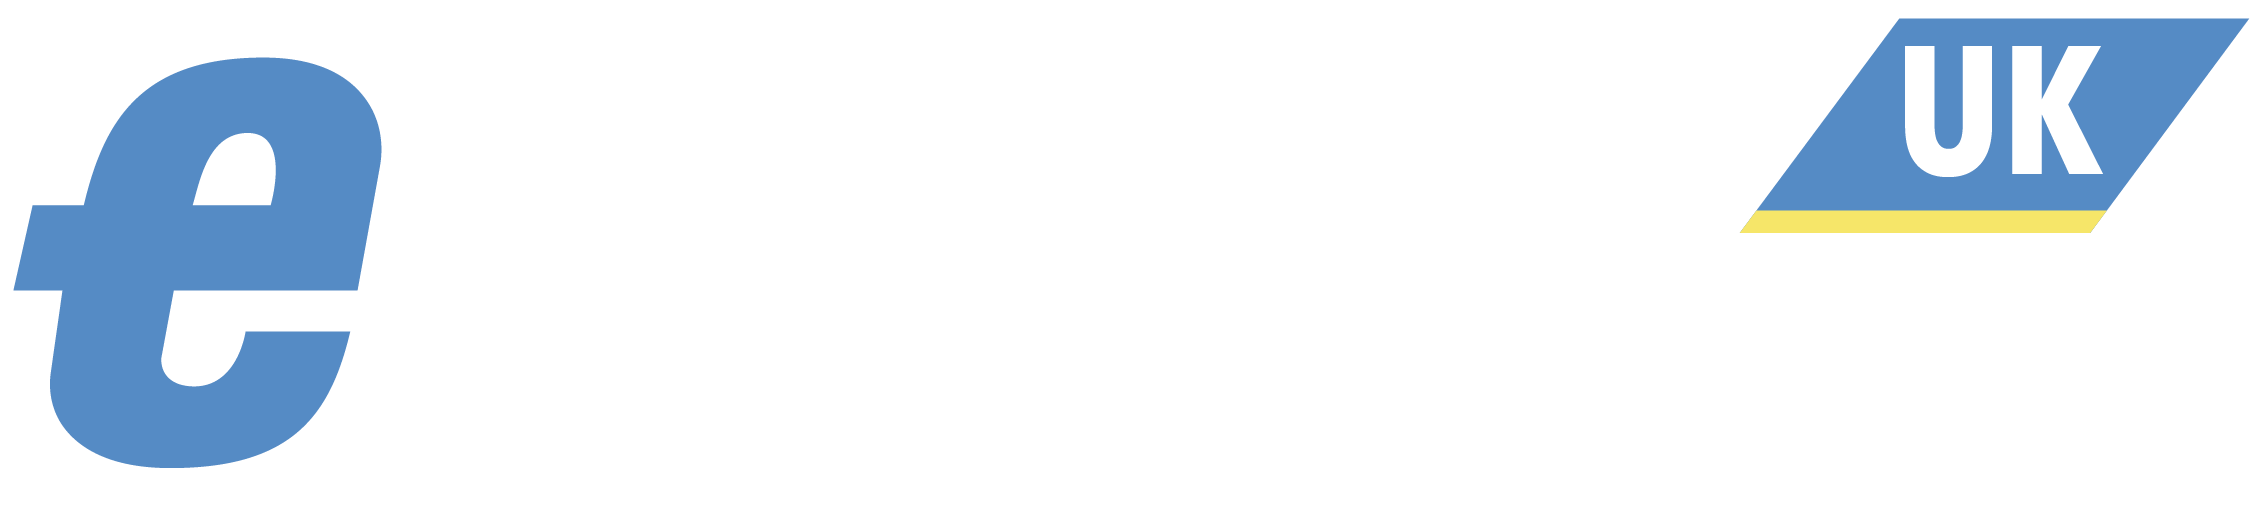 eWeekUK Logo